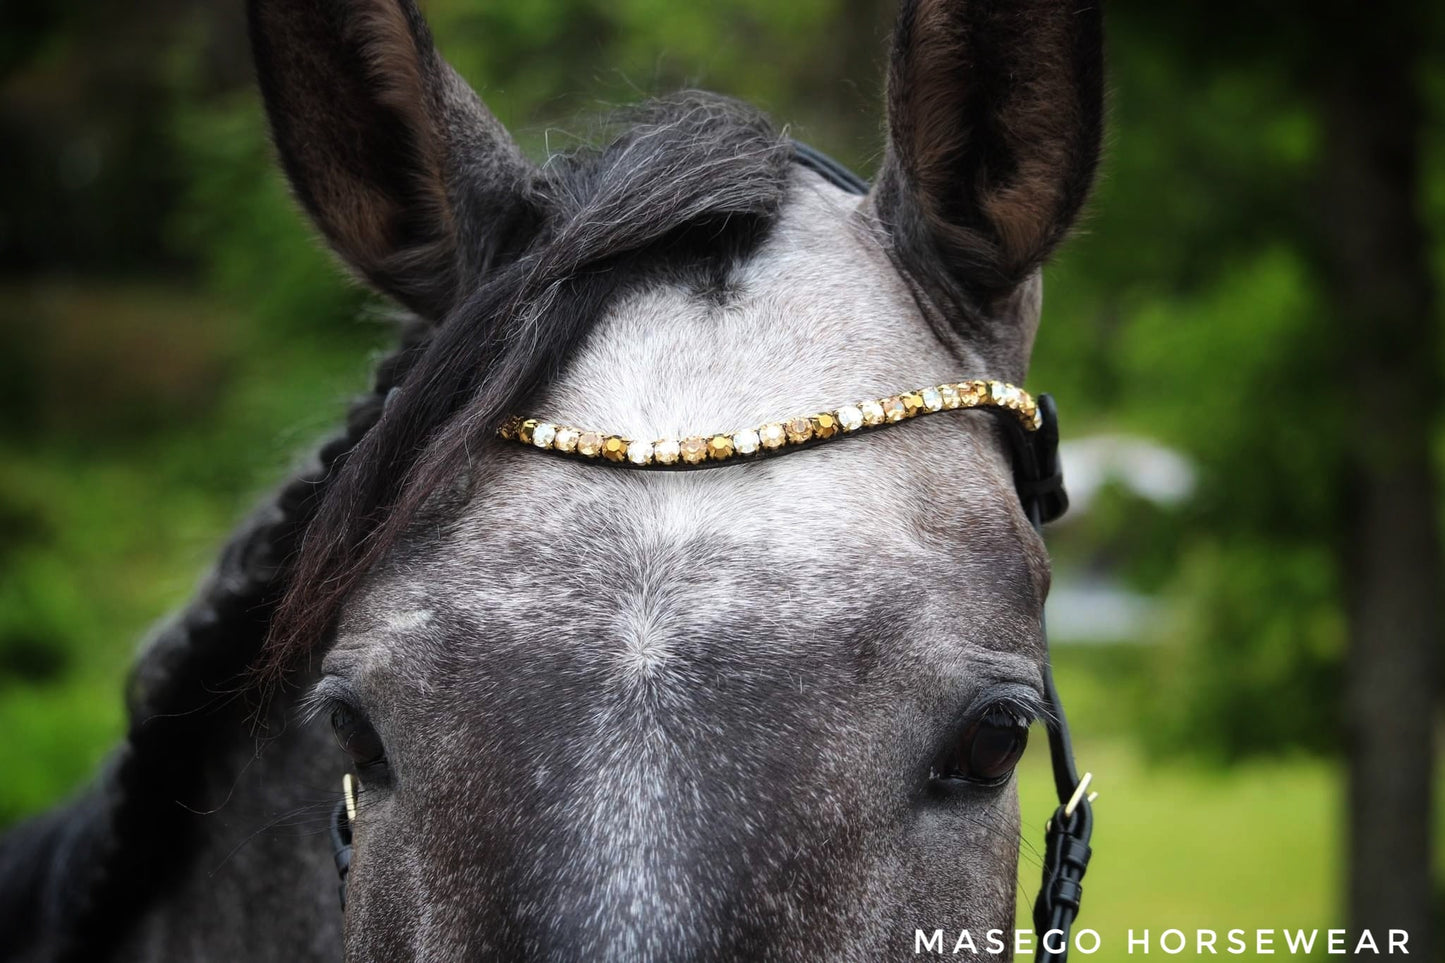 Masego Sparkling amber - MASEGO horsewear